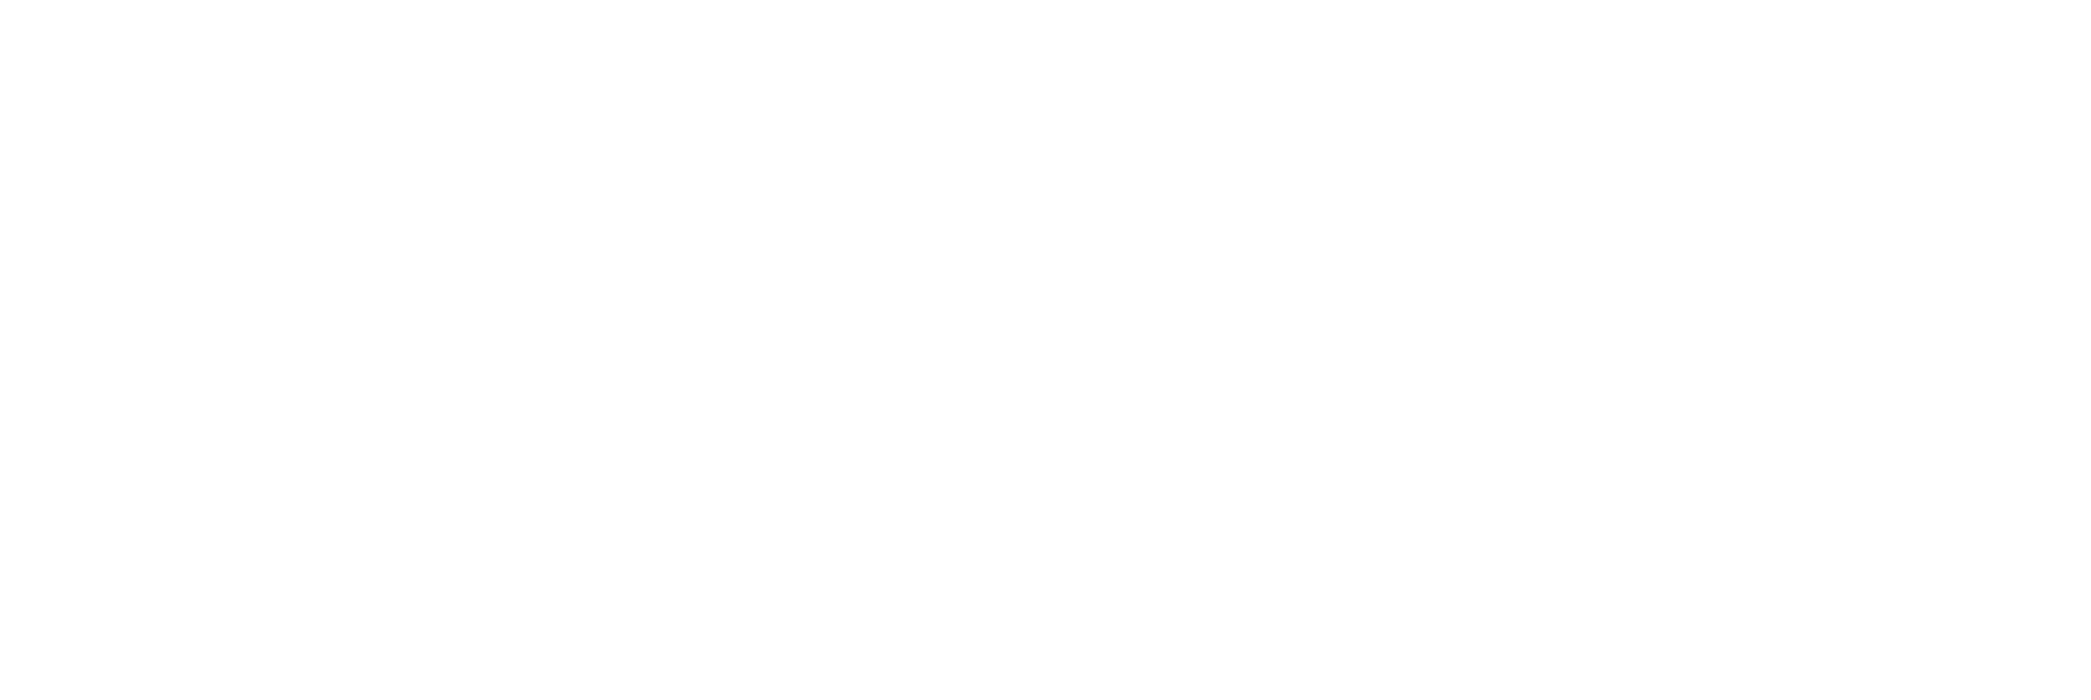 Das Eggenberg Logo